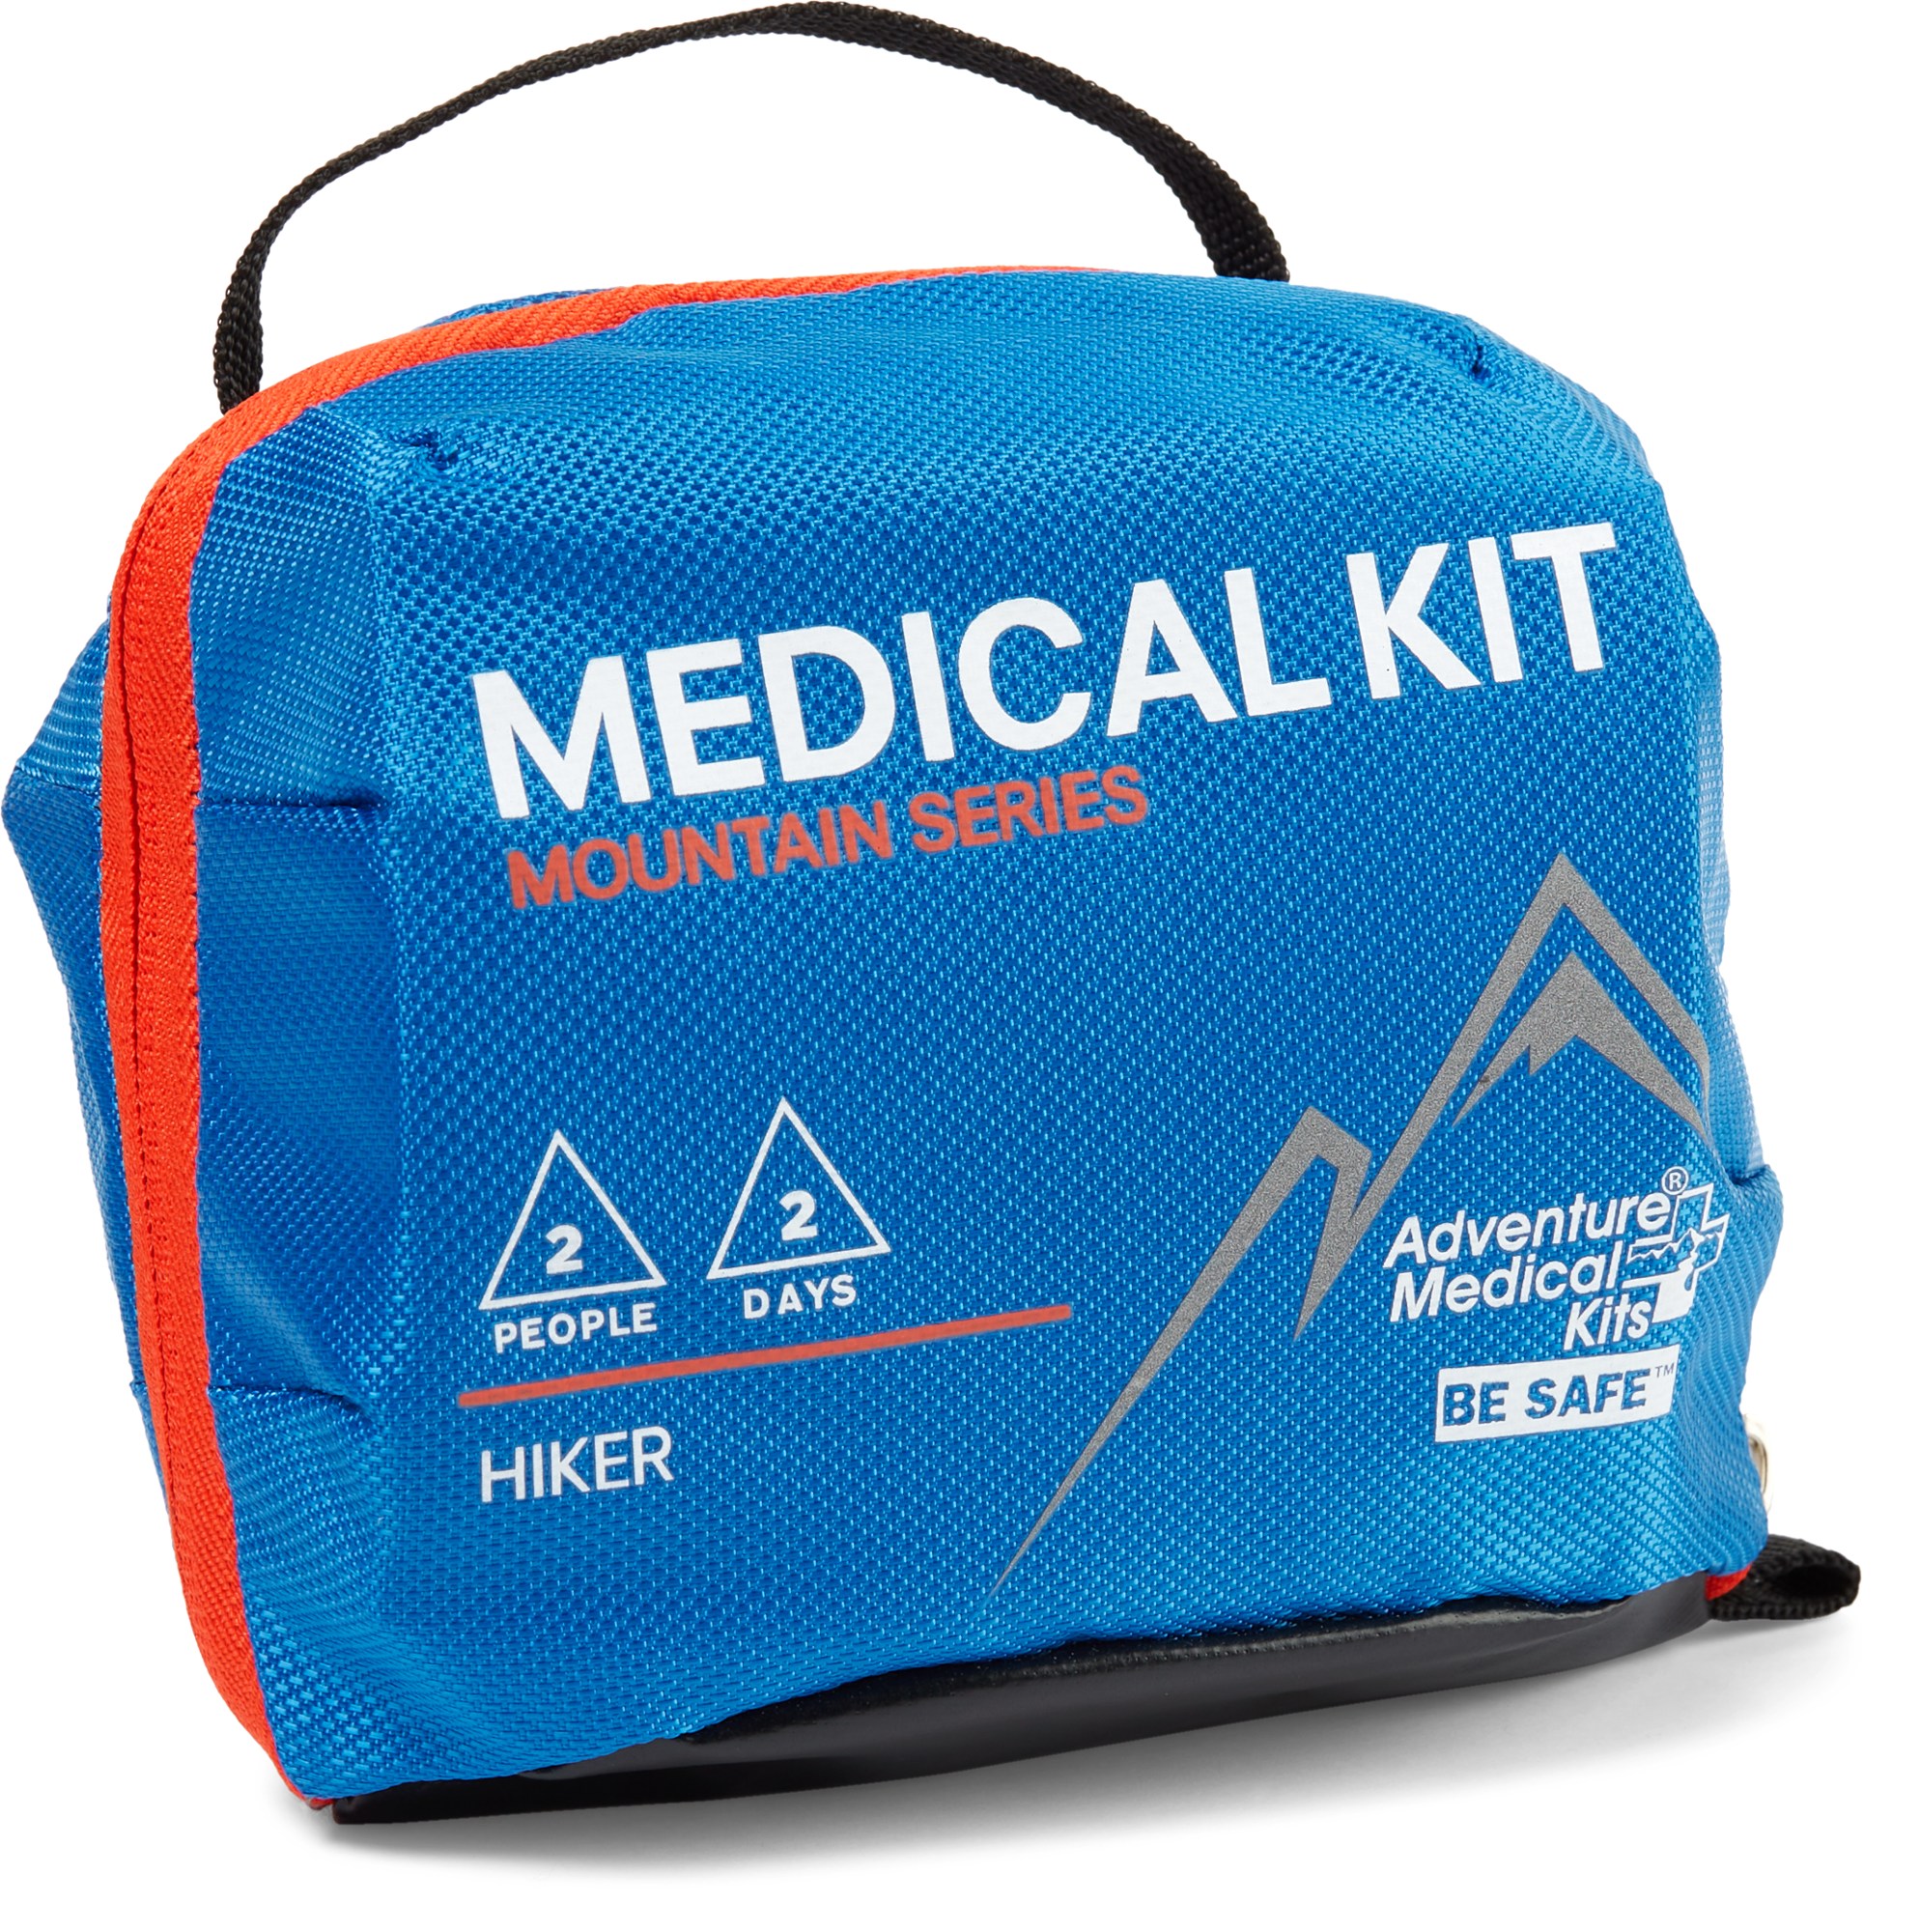 Медицинский набор для туристов Mountain Series Adventure Medical Kits, синий медицинский набор для альпинистов серии mountain adventure medical kits синий